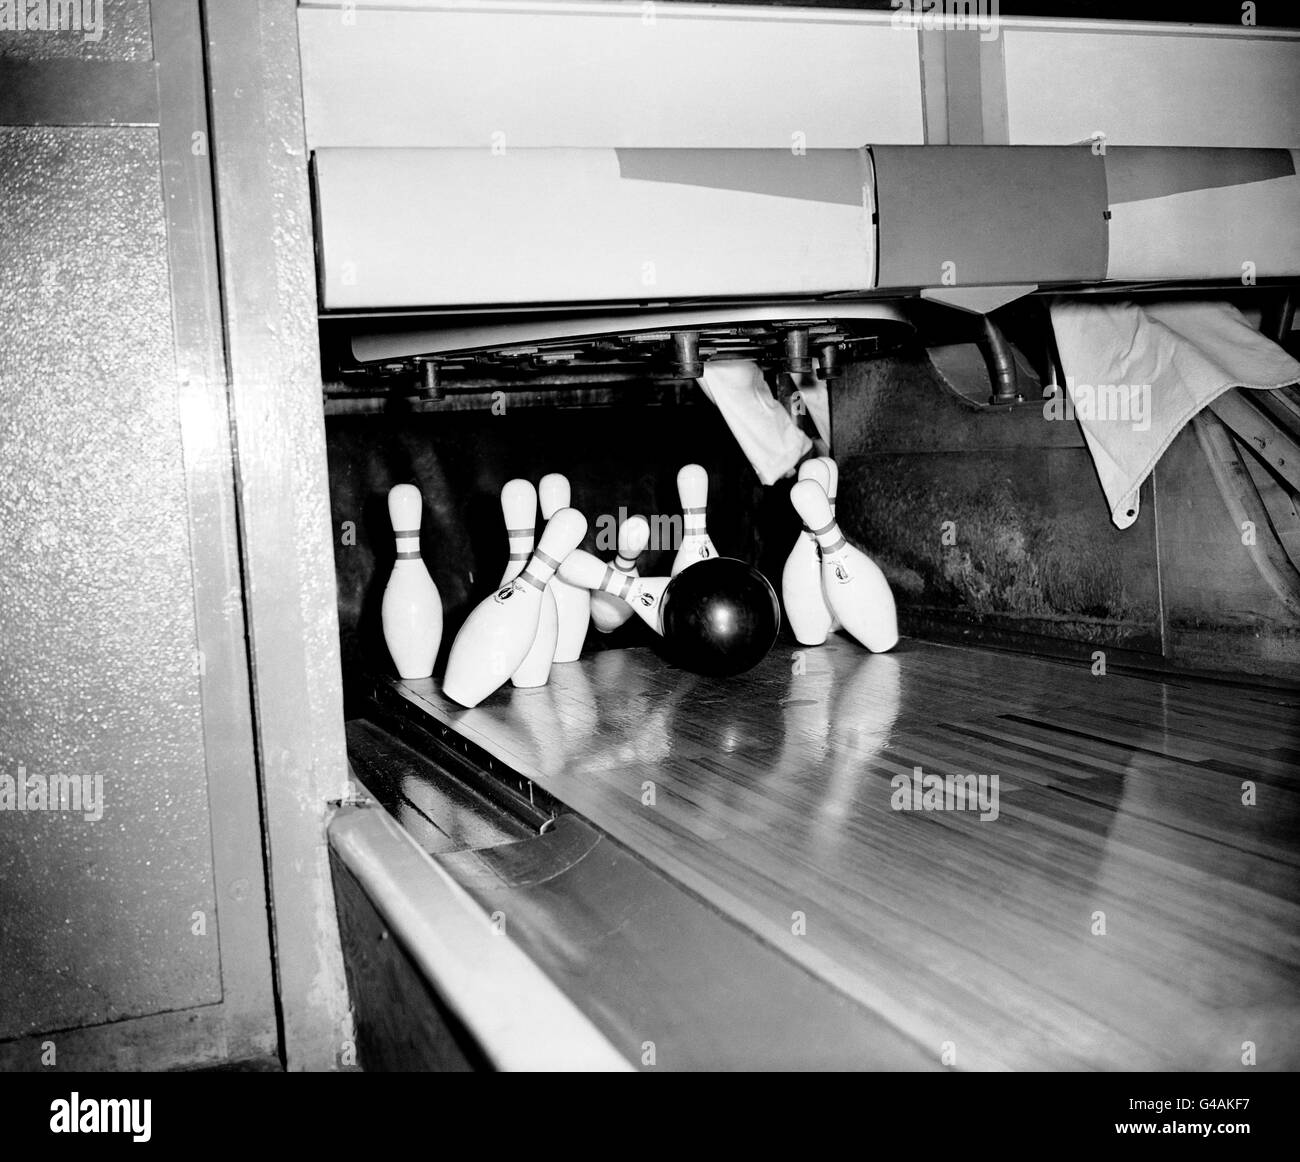 Ten Pin Bowling - United States Air Force Base - Ruislip. Die 16 lb Vollgummi-Kugel sendet die Pins fliegen während eines Spiels von zehn Pin Bowling. Stockfoto